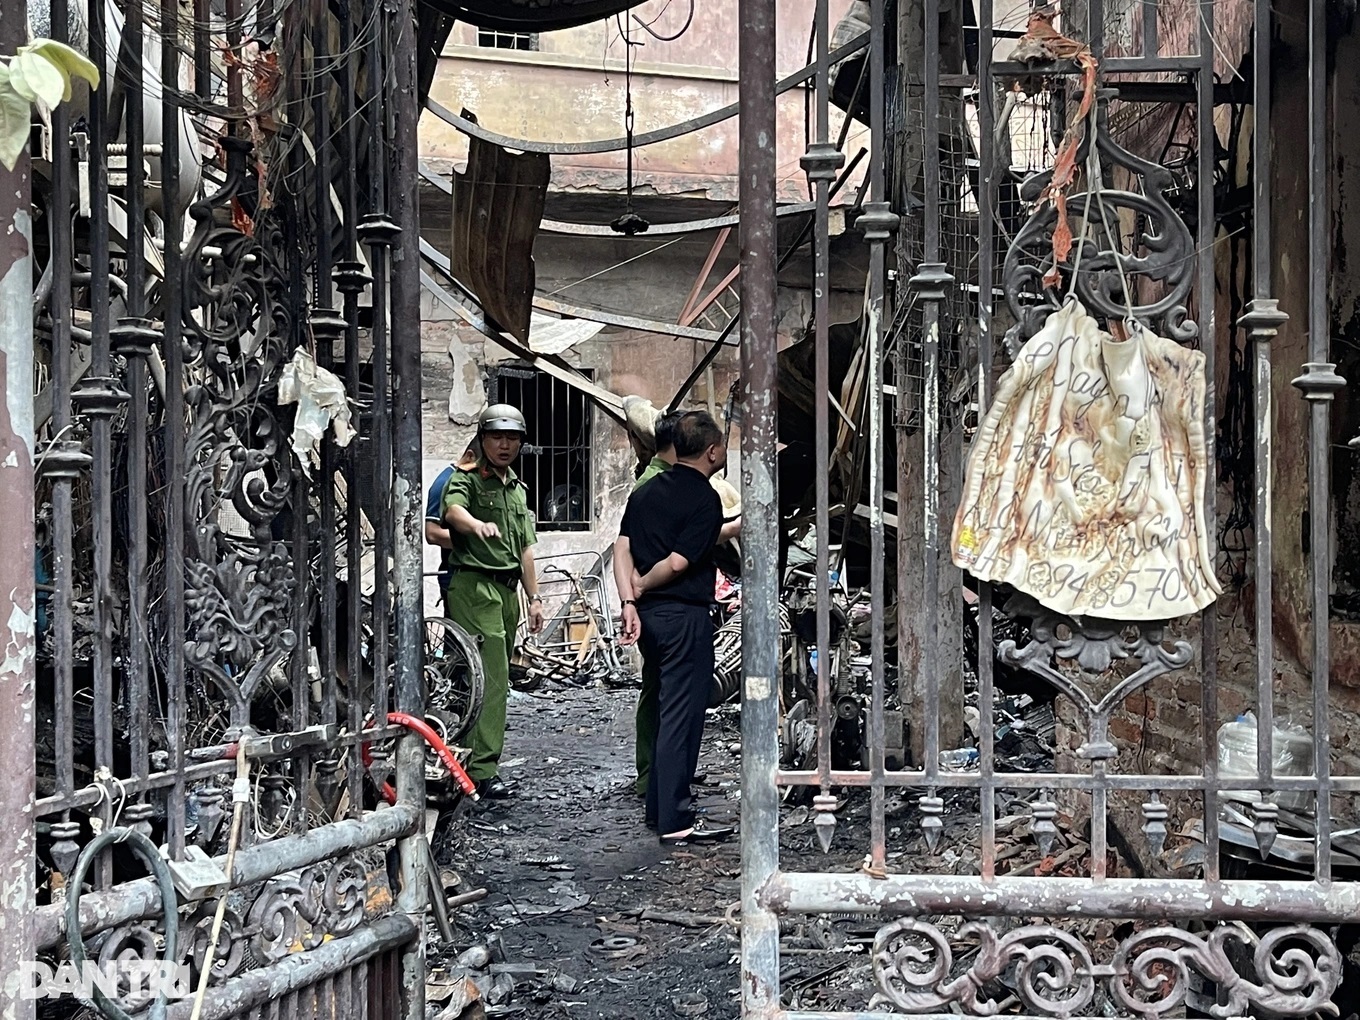 Bí thư Hà Nội: Xử nghiêm sai phạm nếu có trong vụ cháy 14 người tử vong - 3